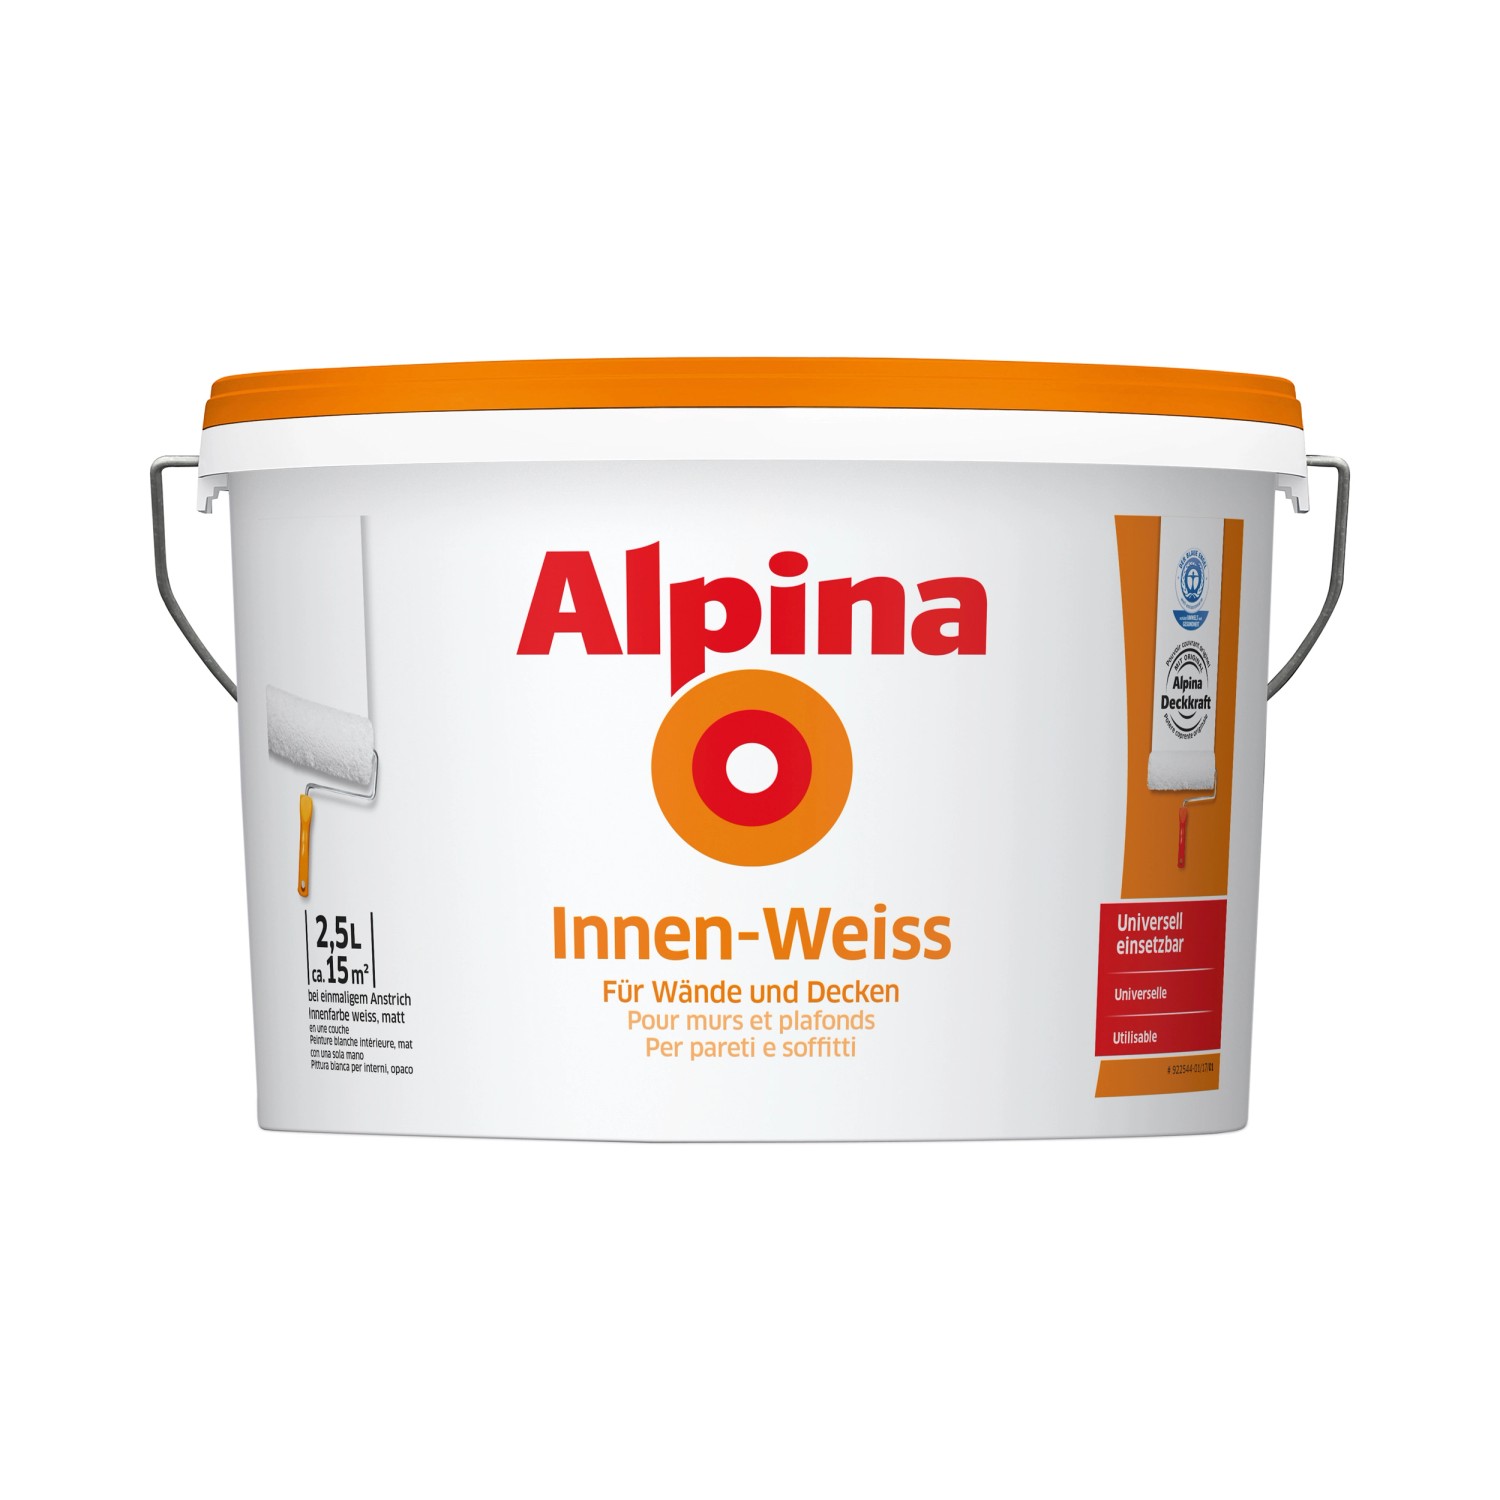 Alpina Ruß- & Nikotin Isolierfarbe 5 Liter weiß, matt